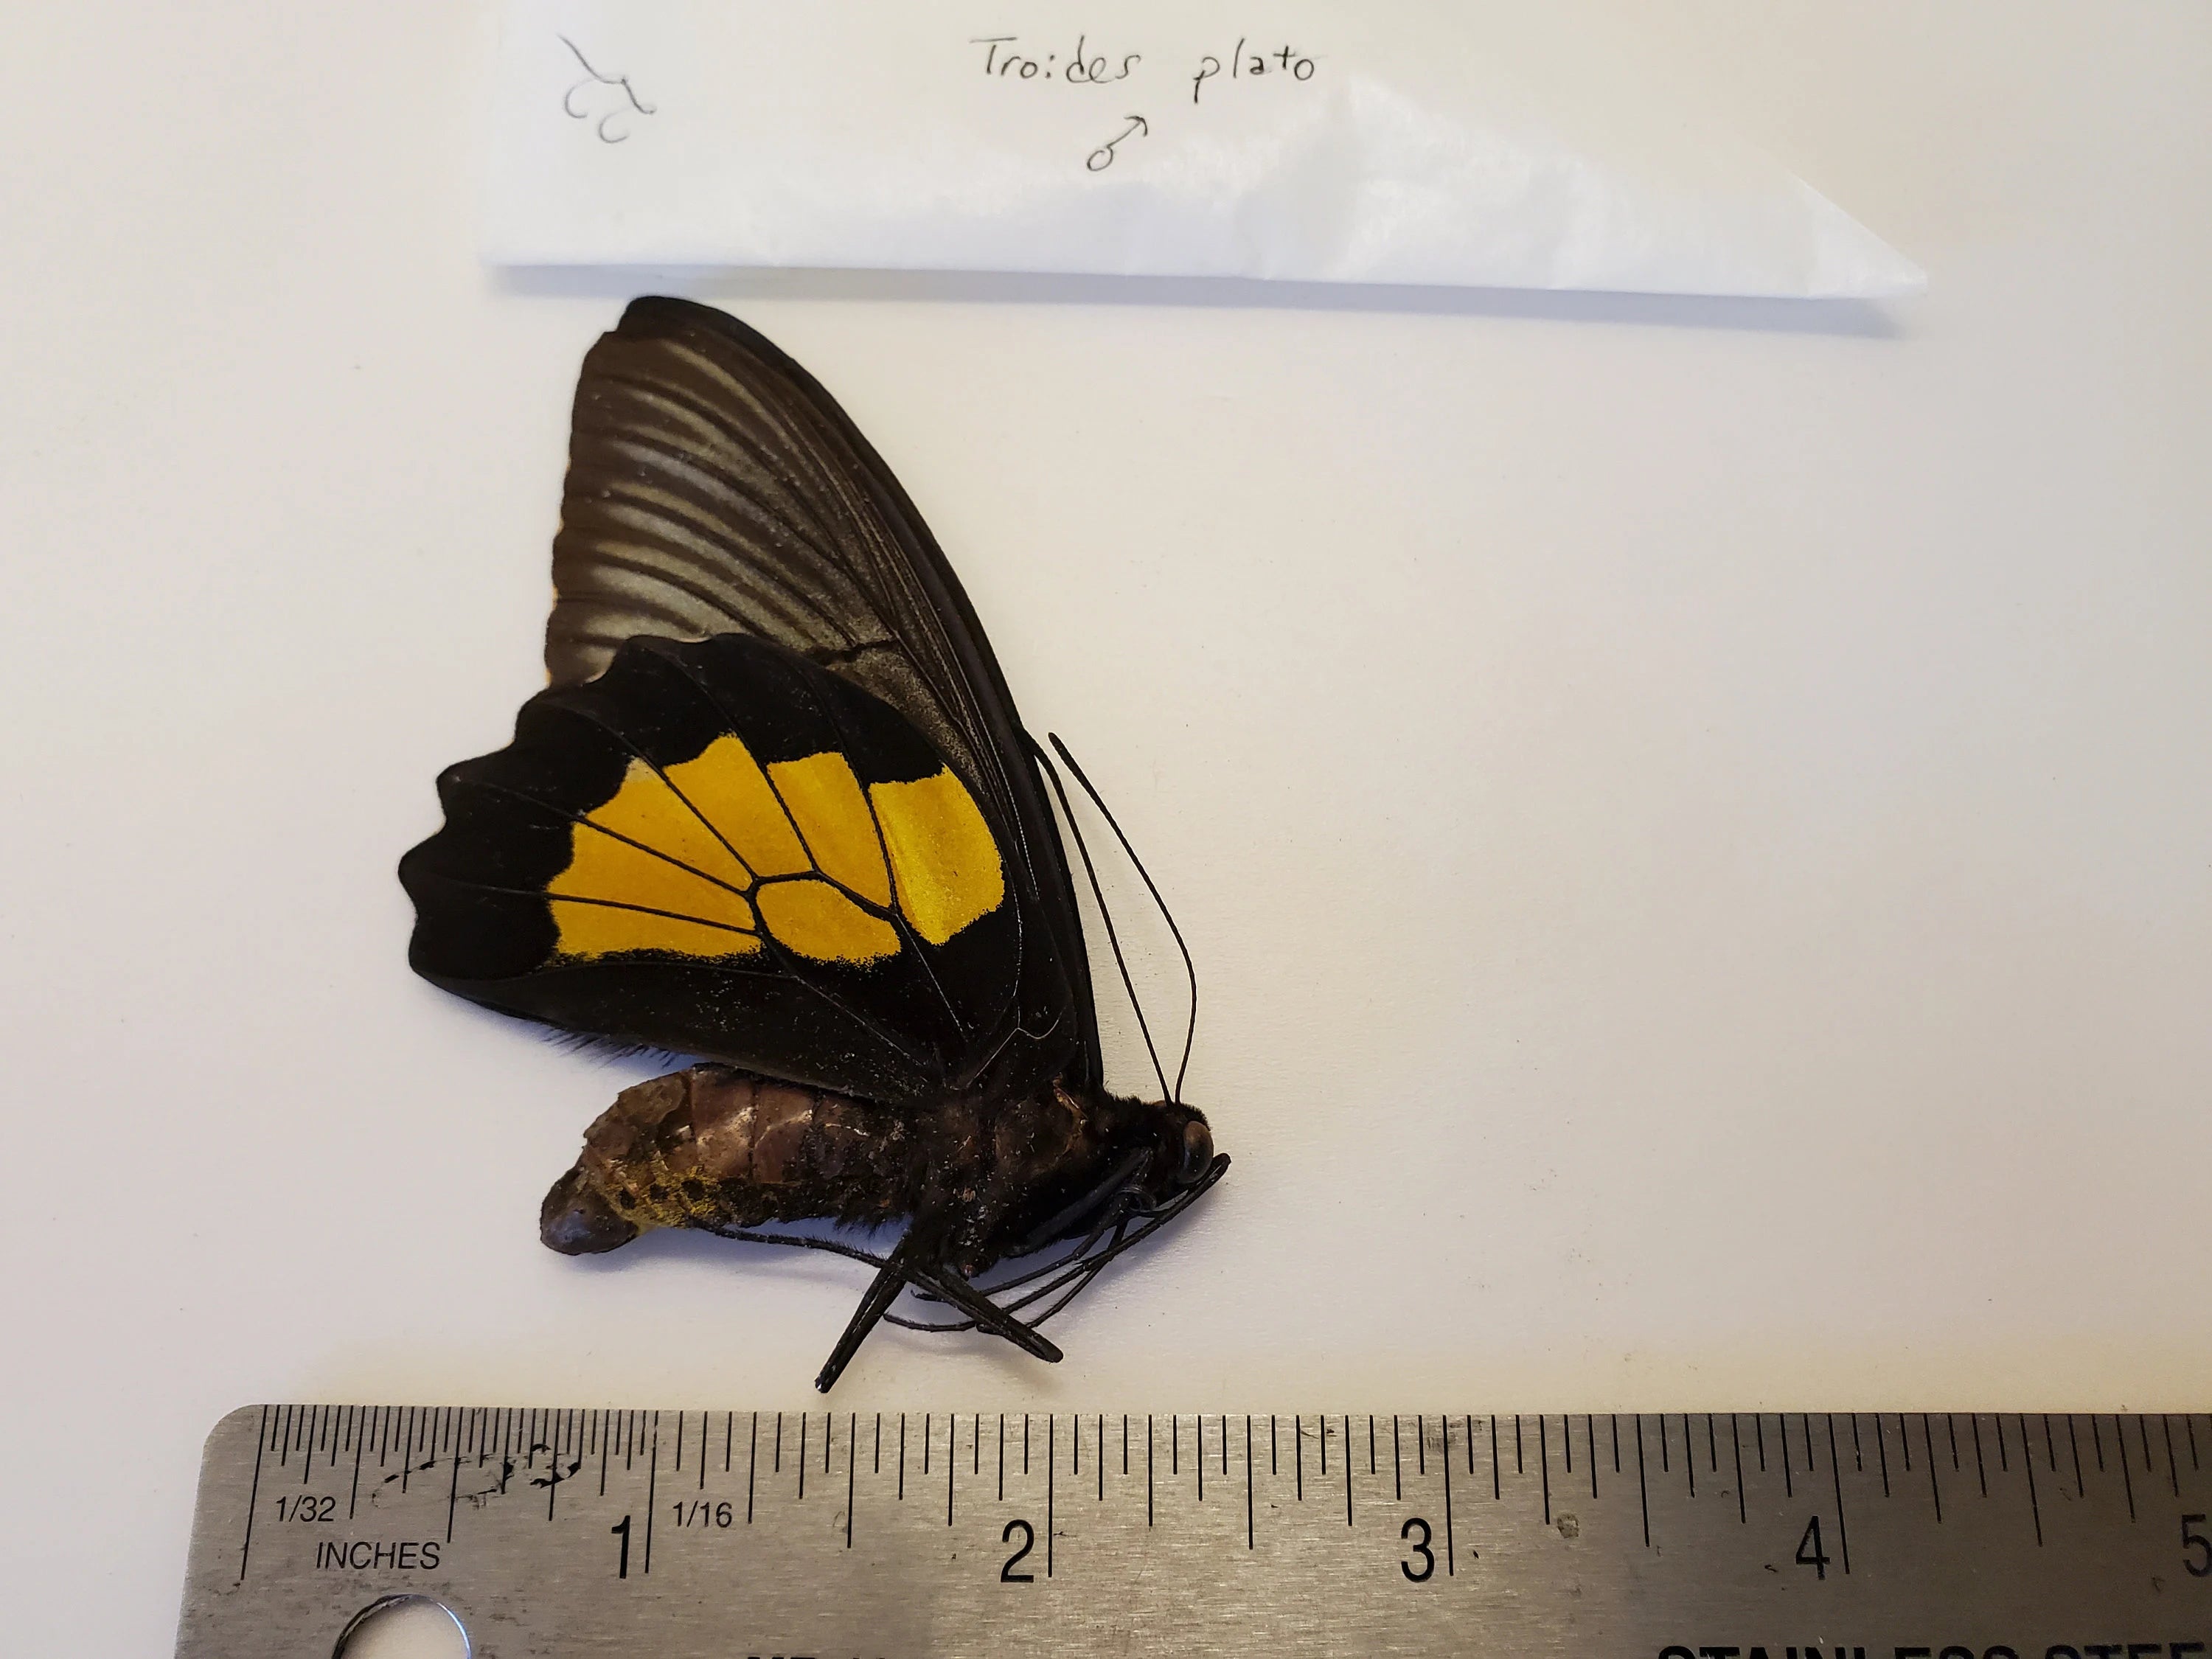 Birdwing Butterfly 'Troides plato' Male